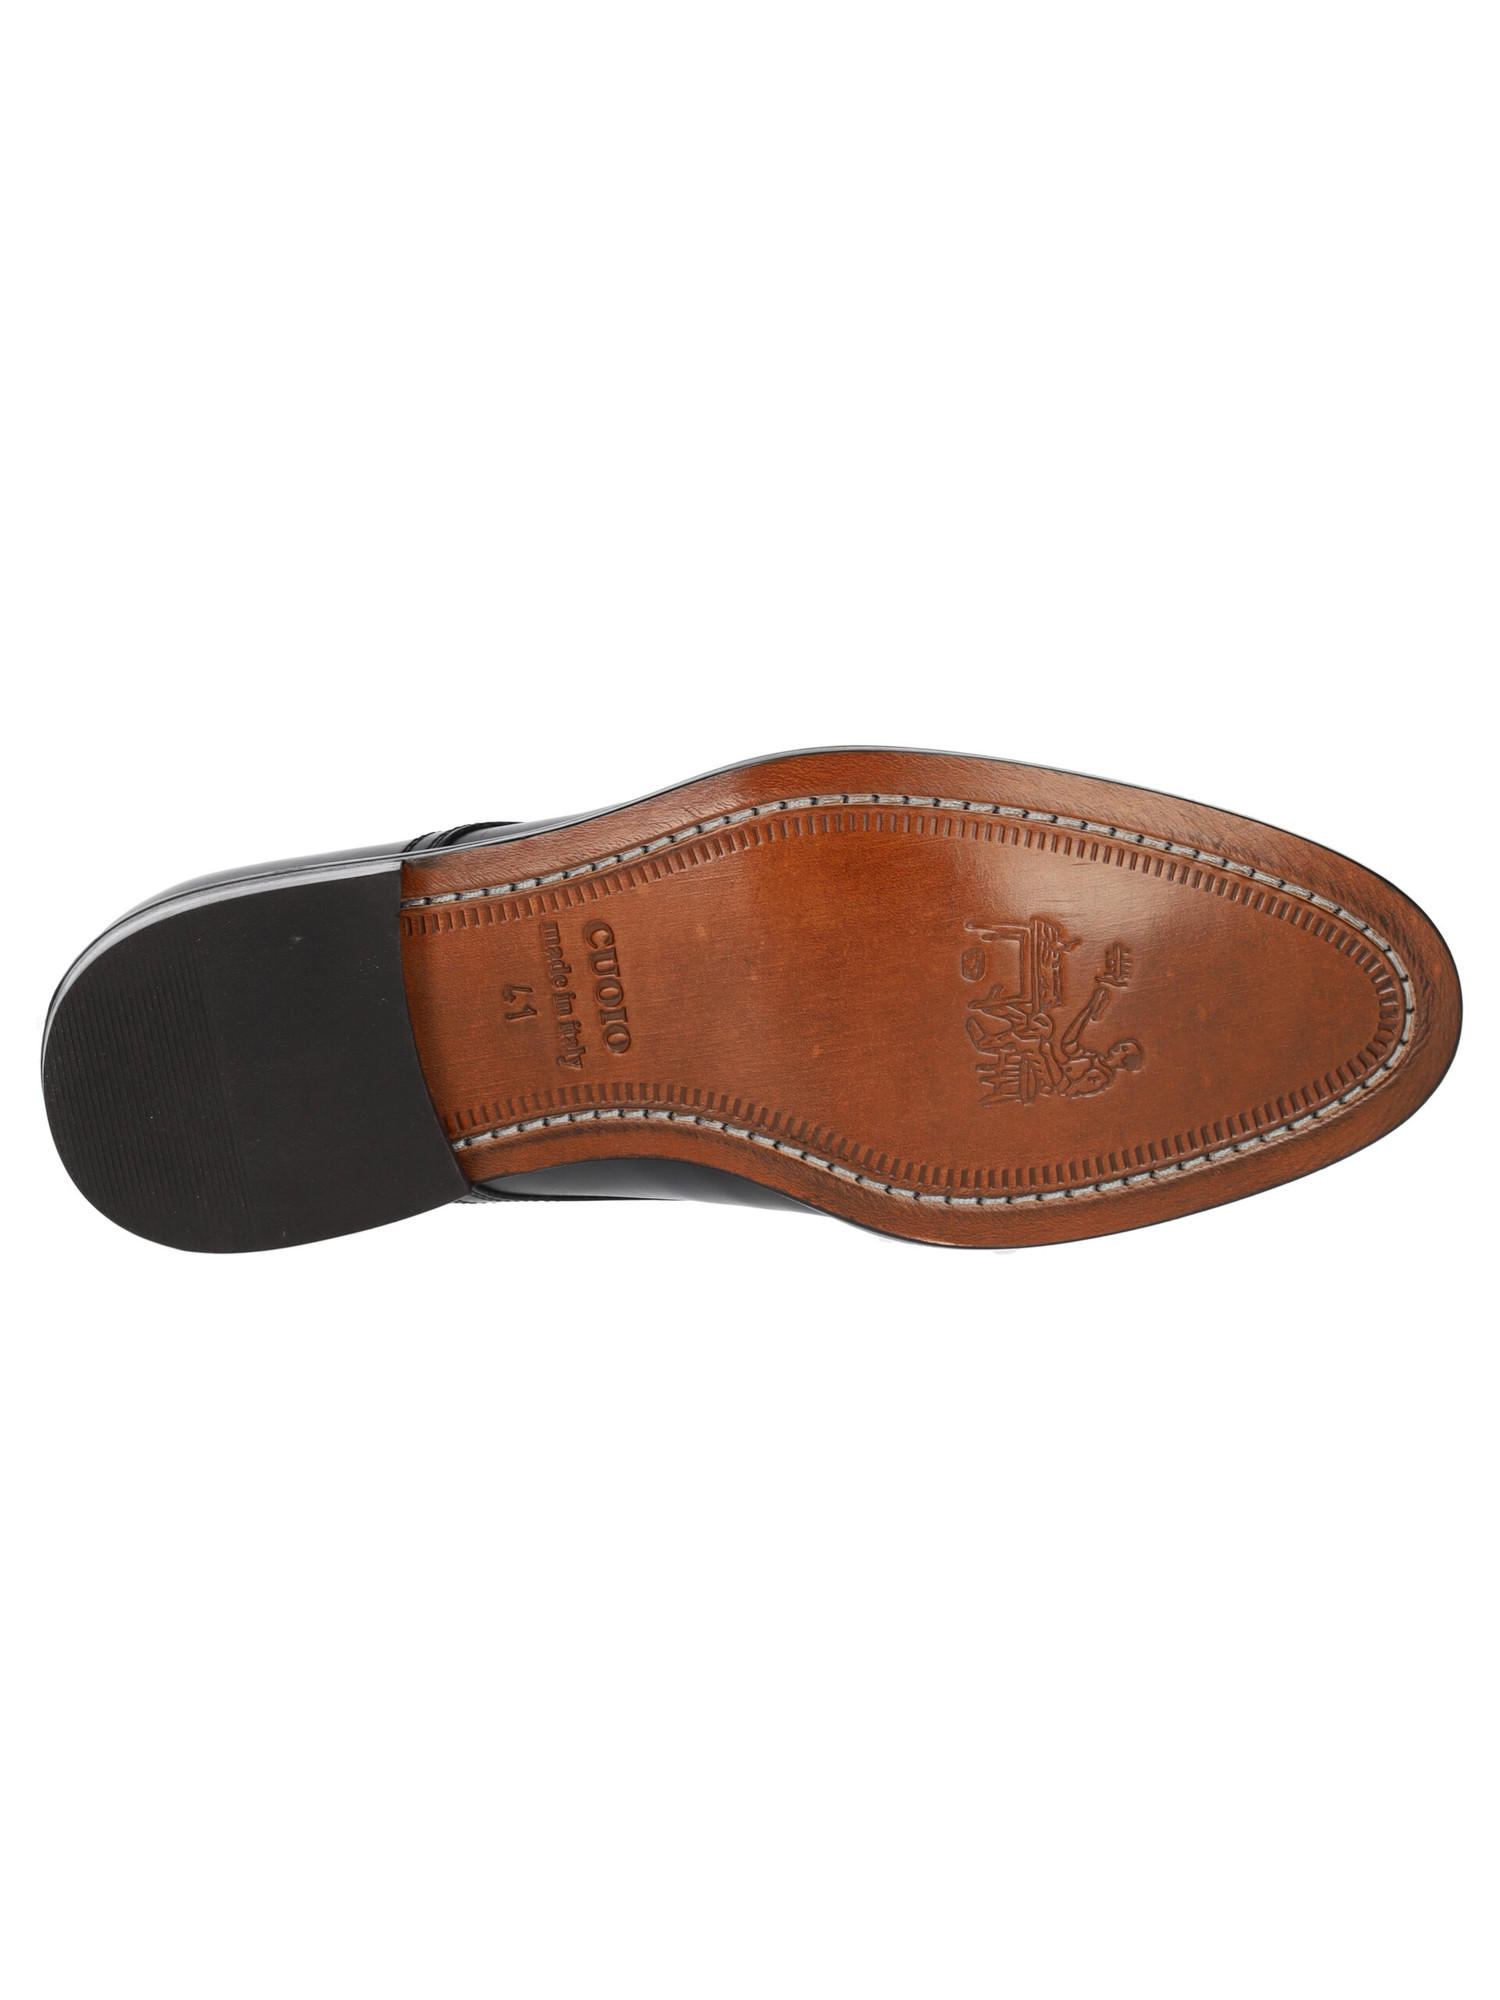 scarpa-elegante-mercanti-fiorentini-da-uomo-nera-6b2058